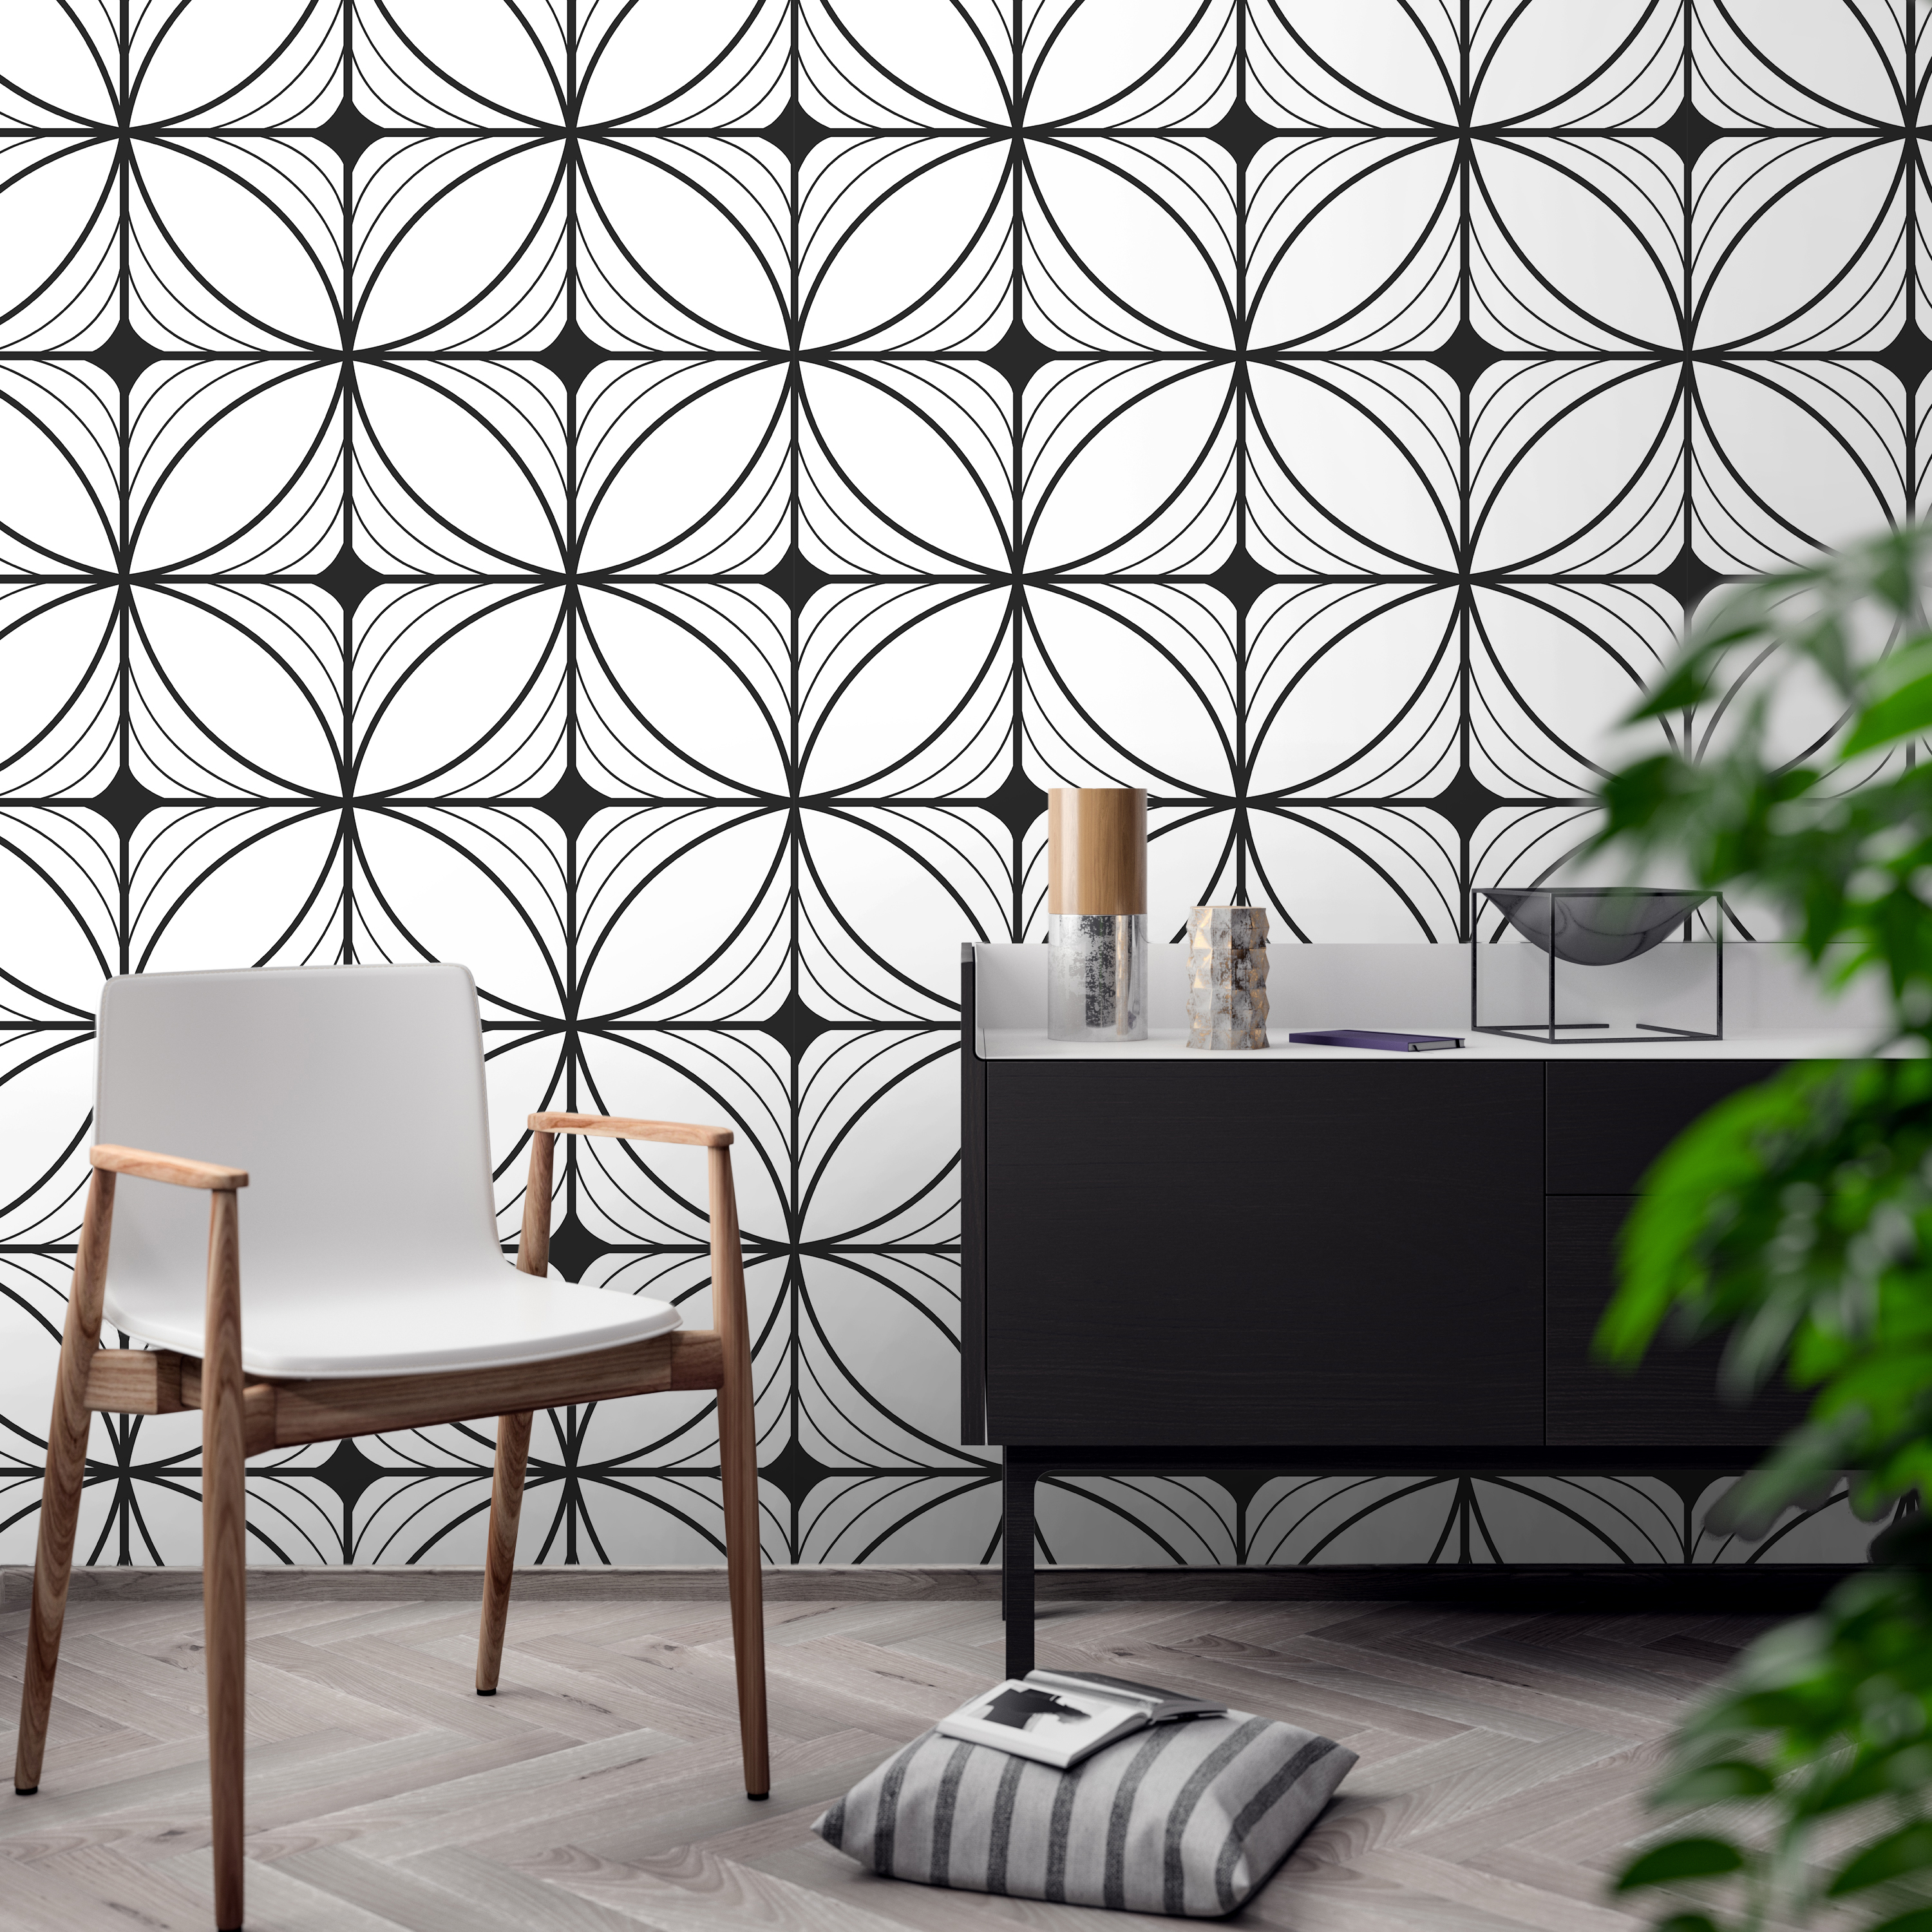 Design , HD Wallpaper & Backgrounds